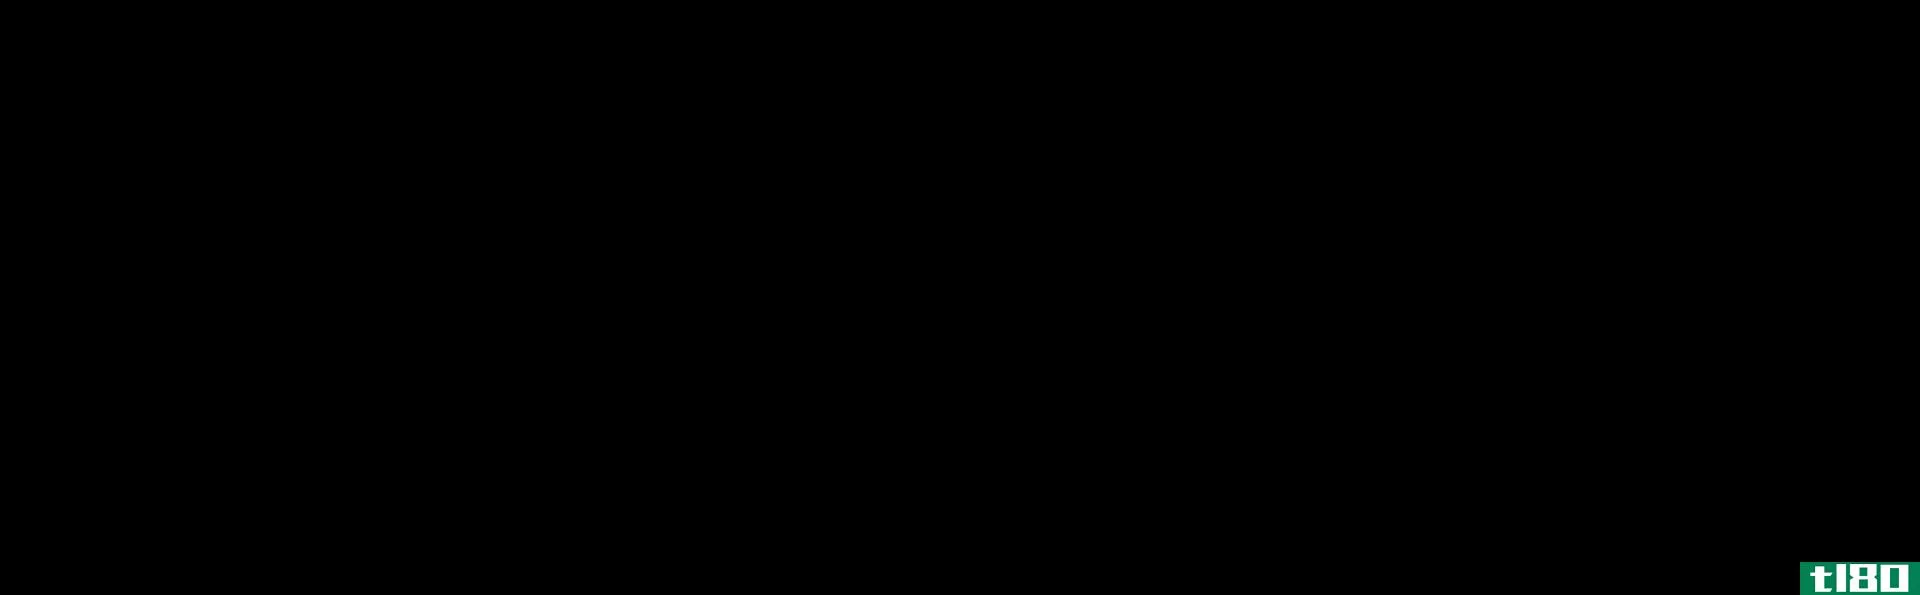 邻二甲苯(o-xylene)和对二甲苯(p-xylene)的区别